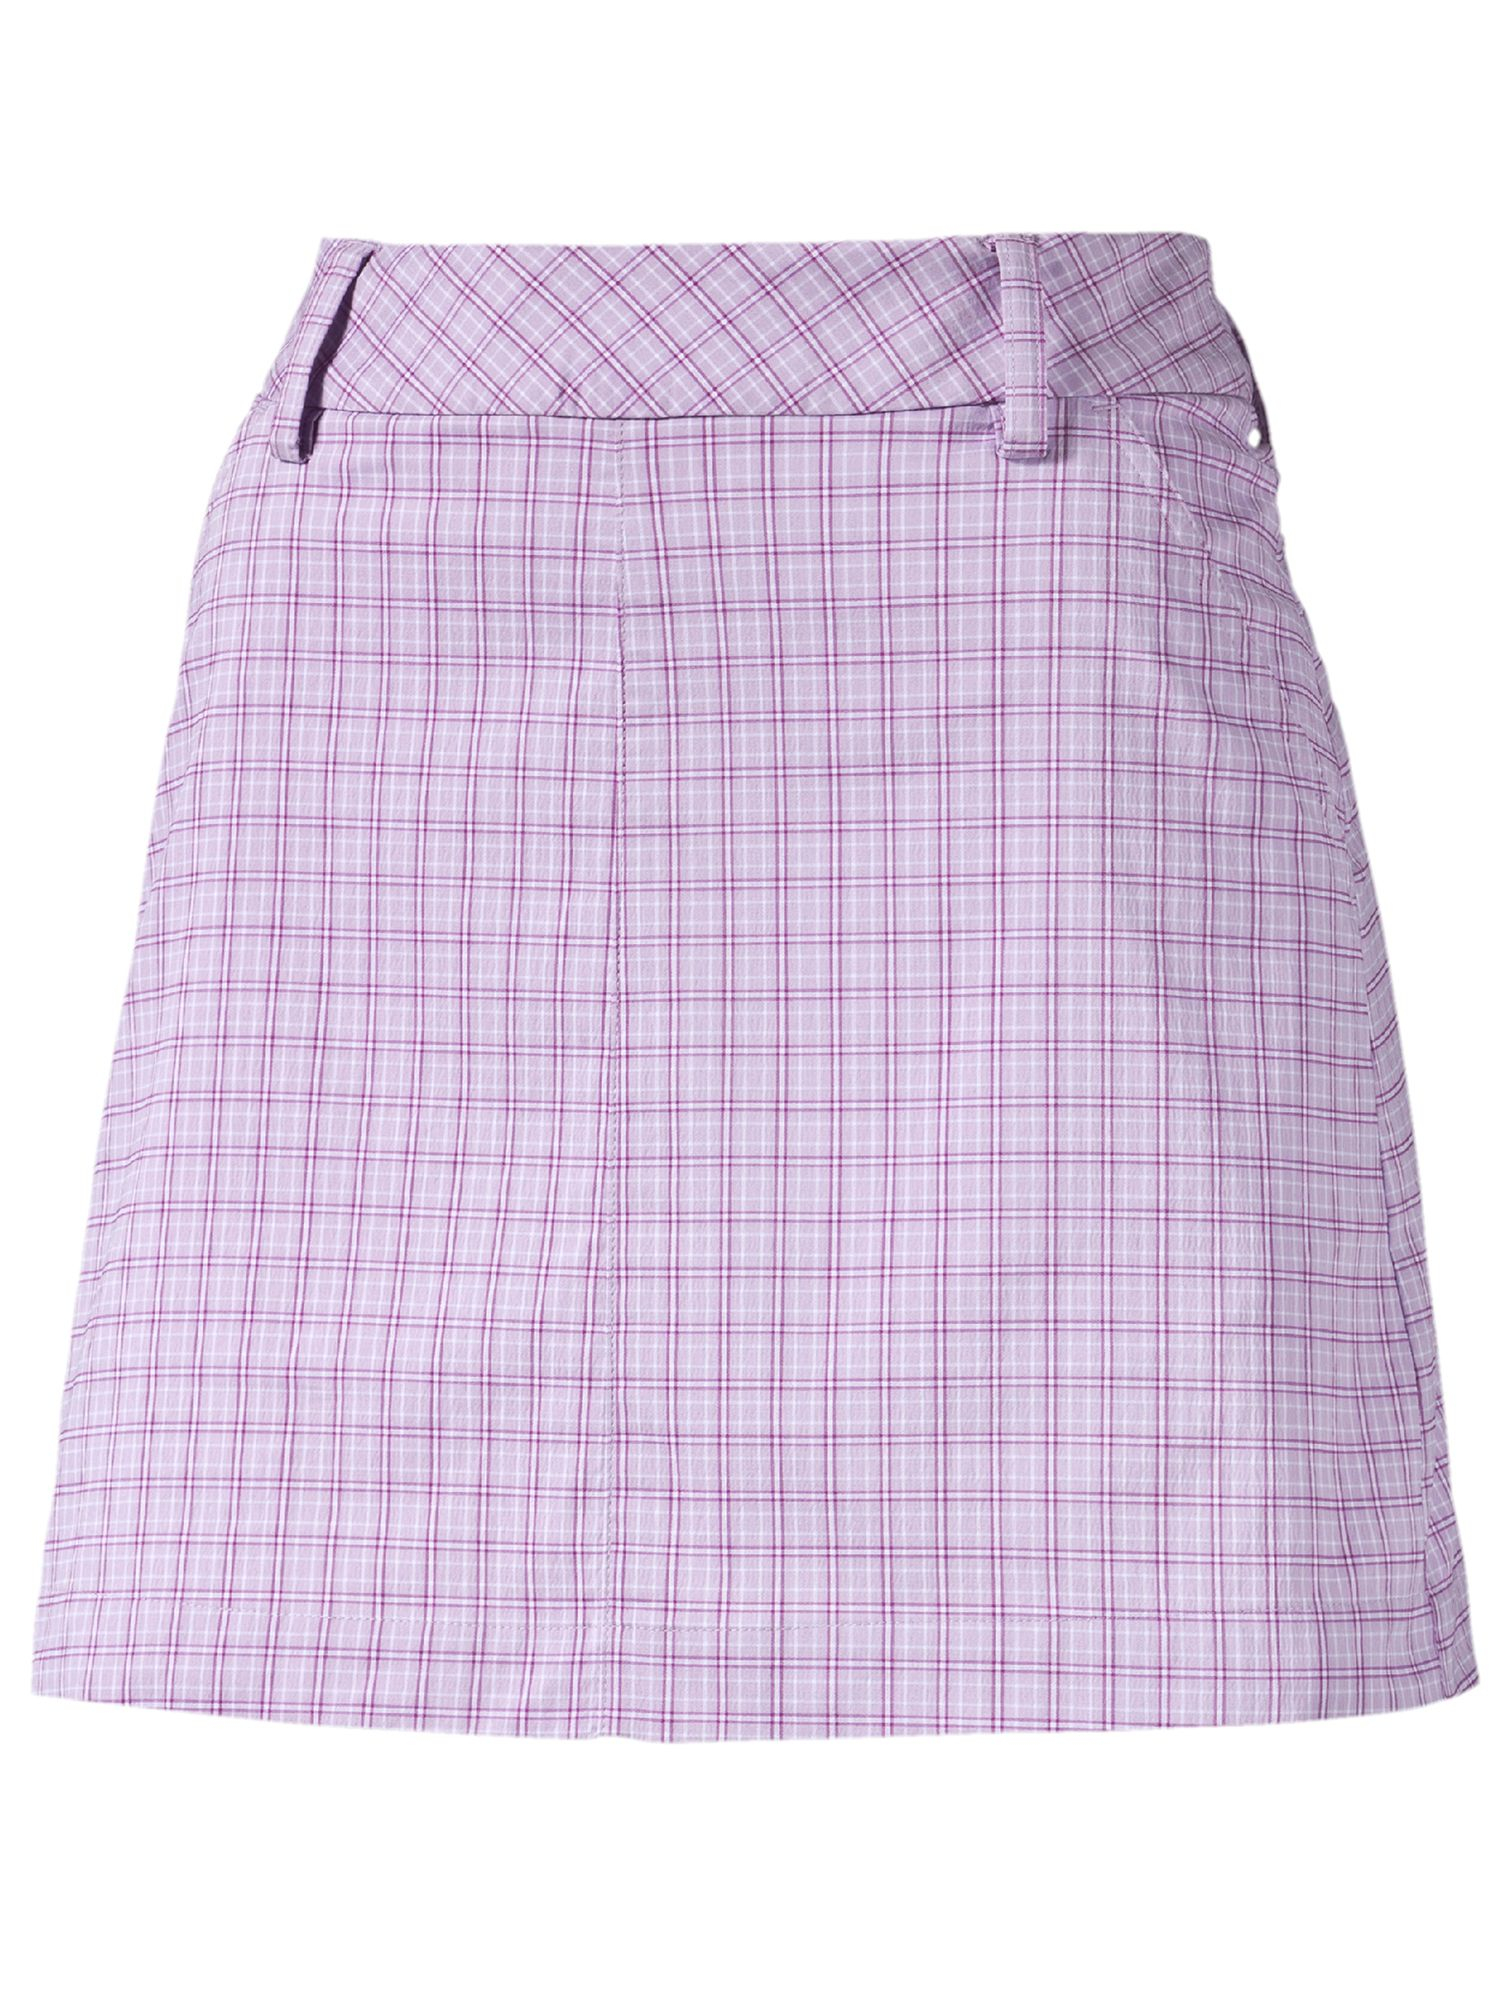 Purple Plaid Skirt 95